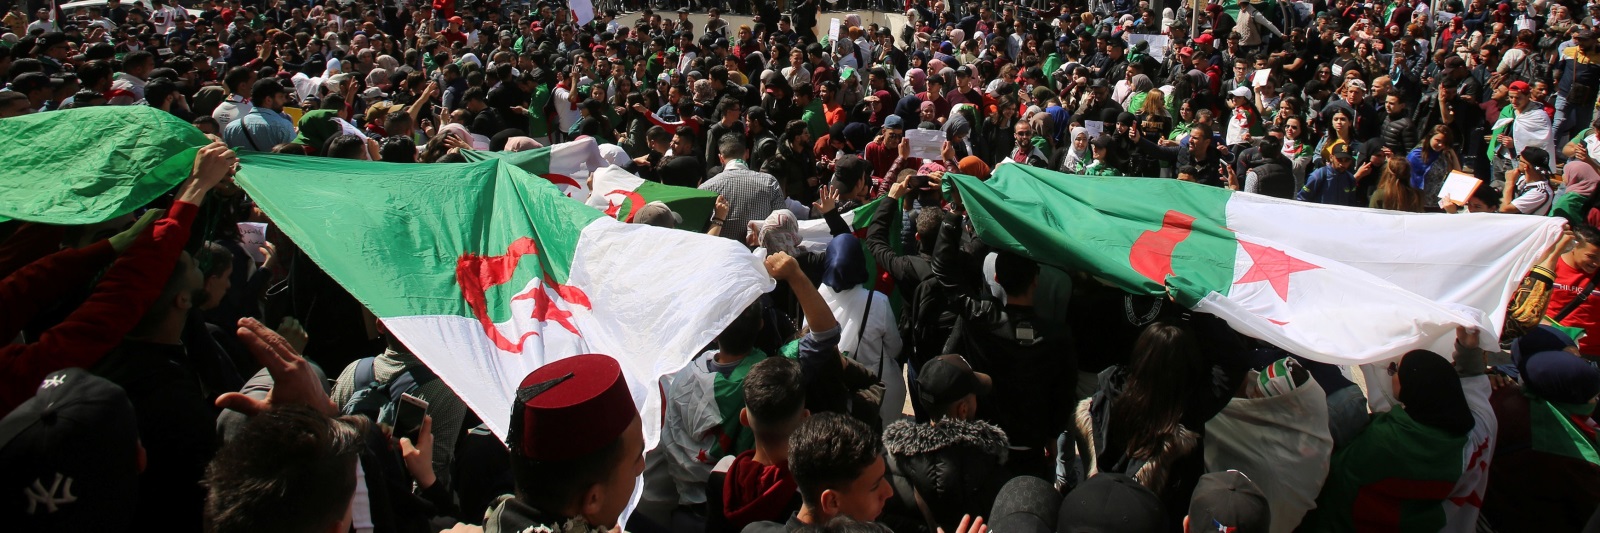 التجربة الديمقراطية الجزائرية بين الشعبوية والتمثيل